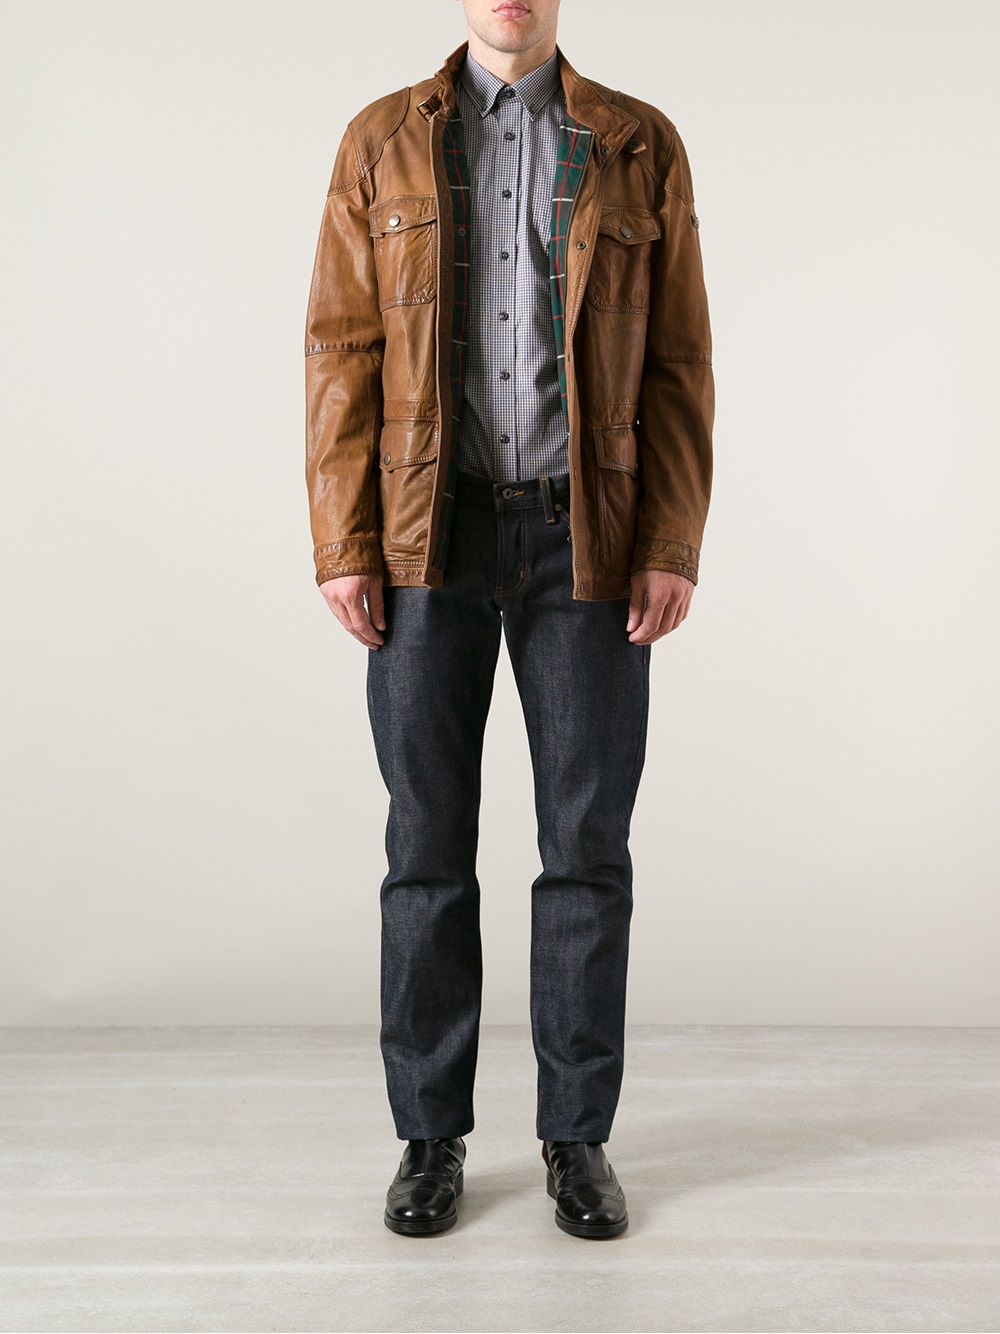 Hackett Hackett Leather Jacket in Brown for Men - Lyst